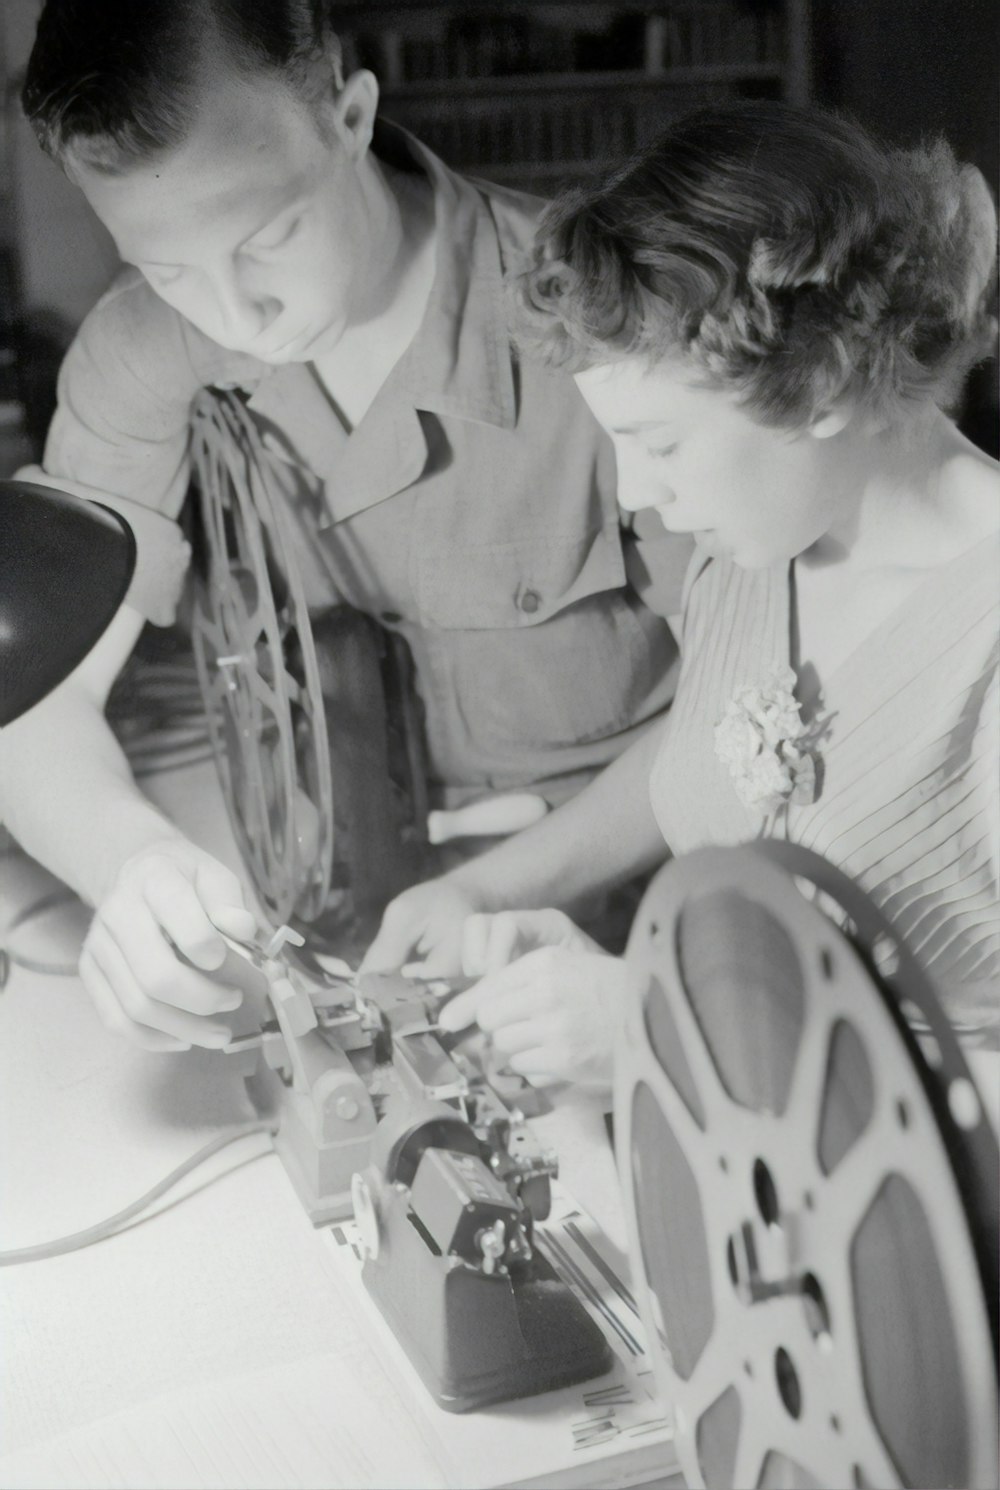 fotografia in scala di grigi dell'uomo che assiste la donna mentre ripara la bobina della pellicola